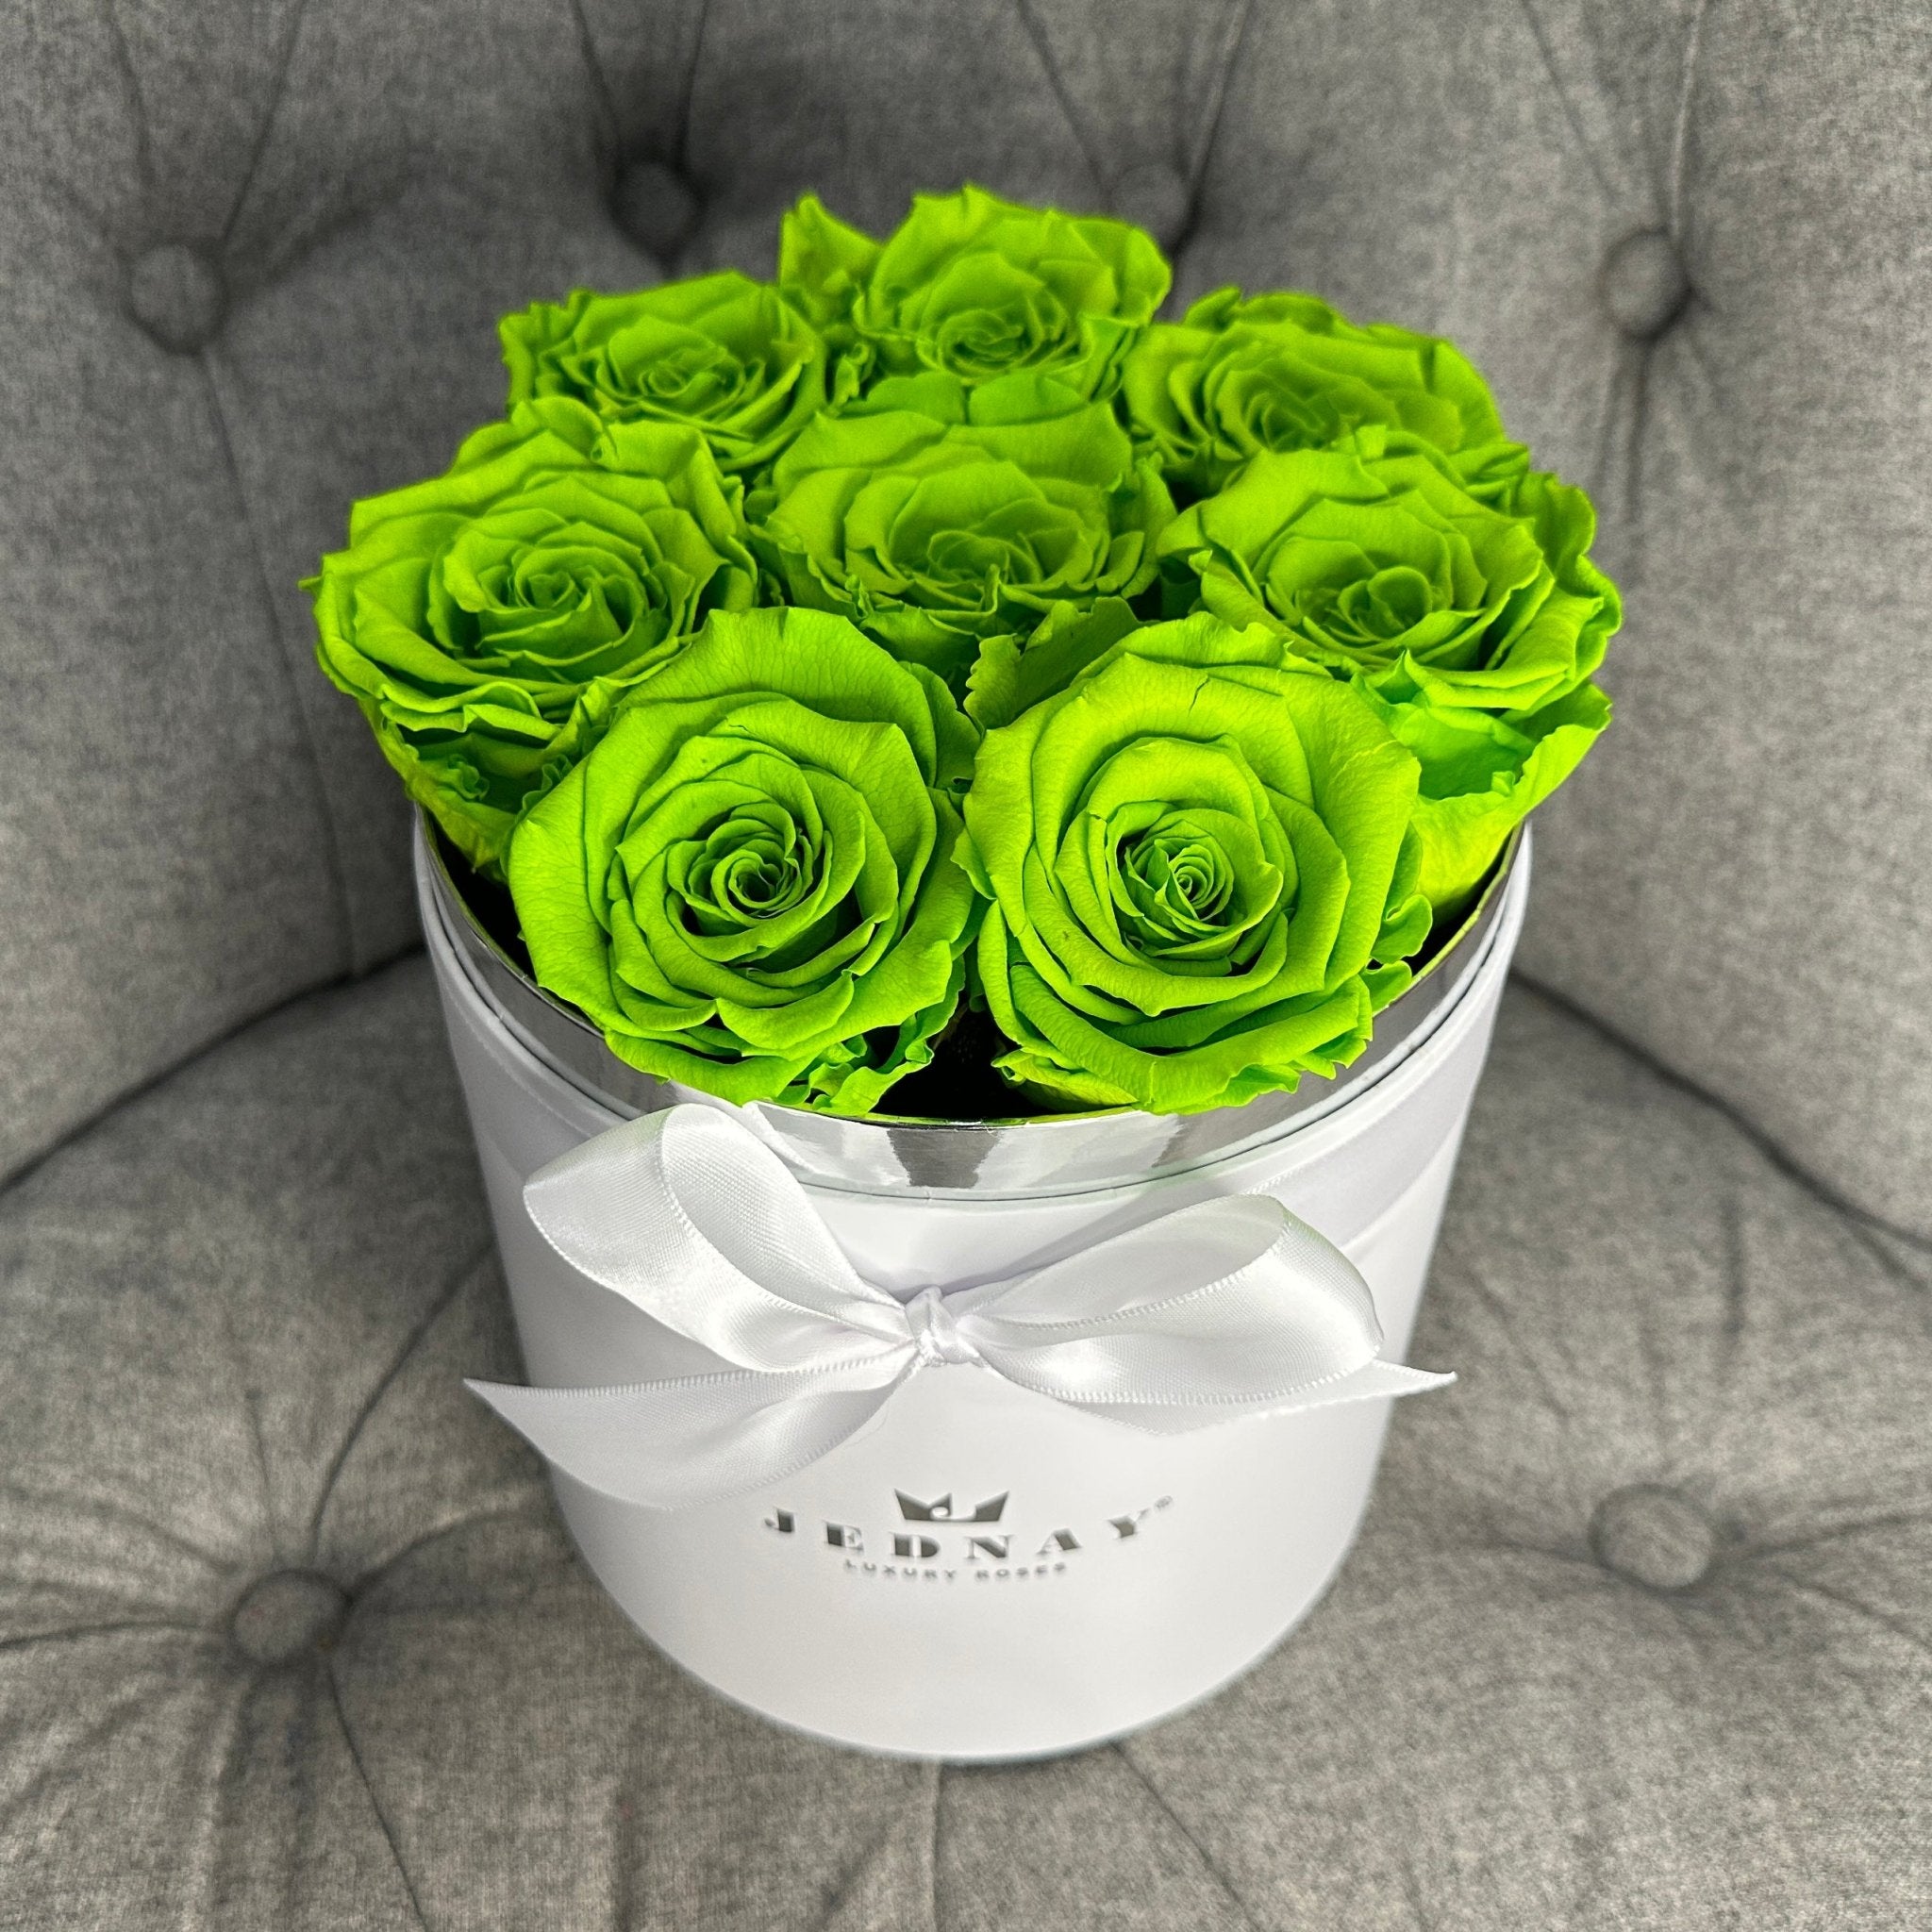 Medium Classic White Forever Rose Box - Limeade Eternal Roses - Jednay Roses